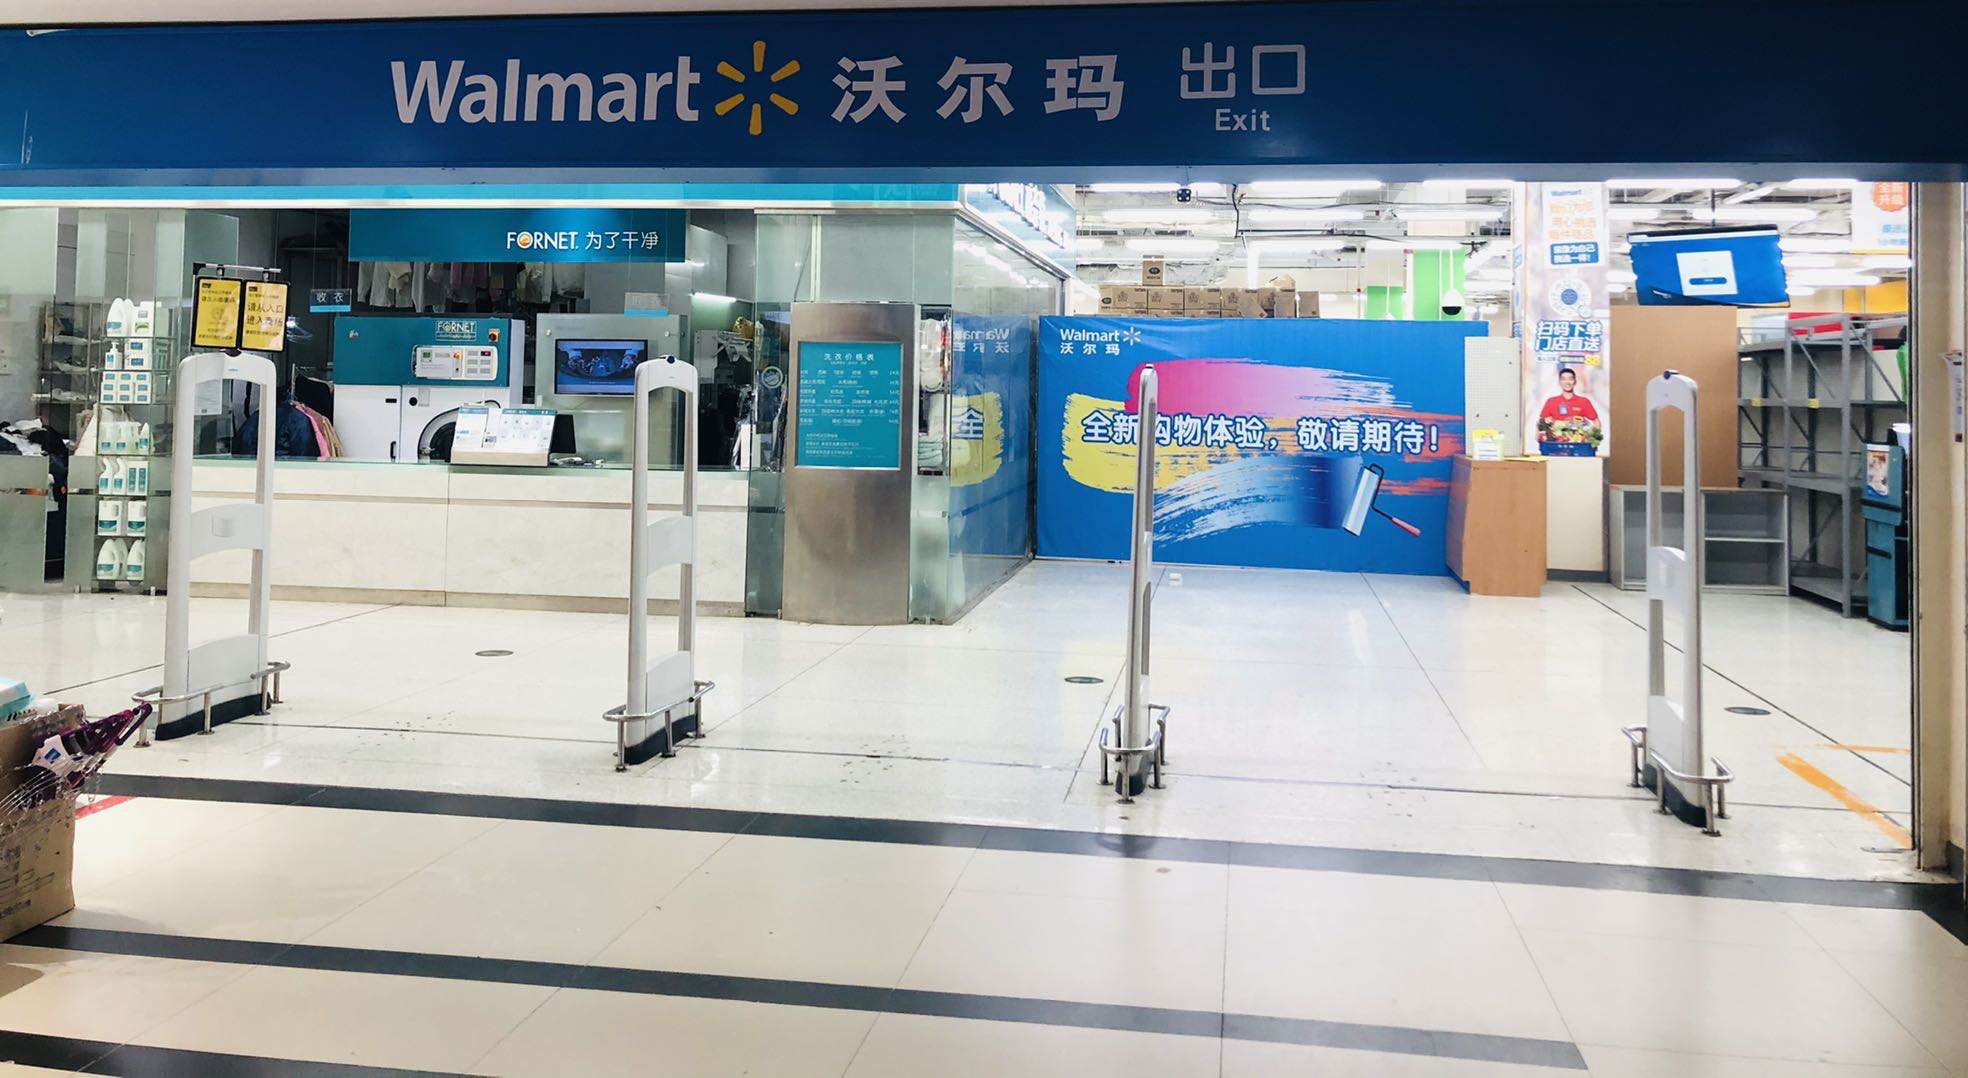 沃尔玛（重庆）购物广场有限公司北城天街分店 环境照片活动图片